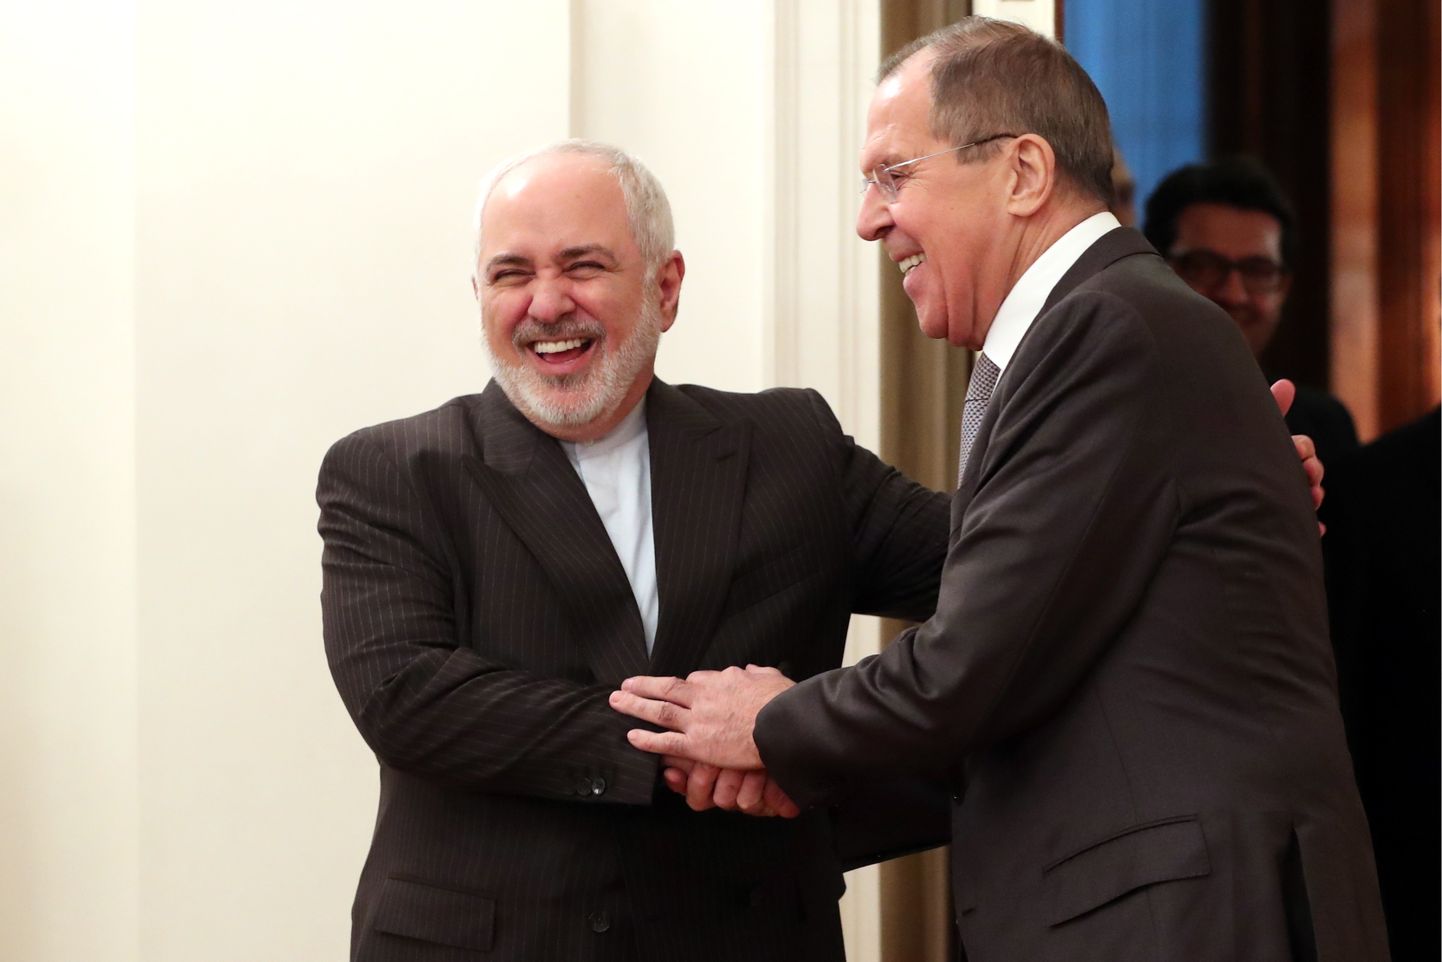 Iraani välisminister Mohammad Javad Zarif (vasakul) ja Vene välisminister Sergei Lavrov esmaspäeval Moskvas.